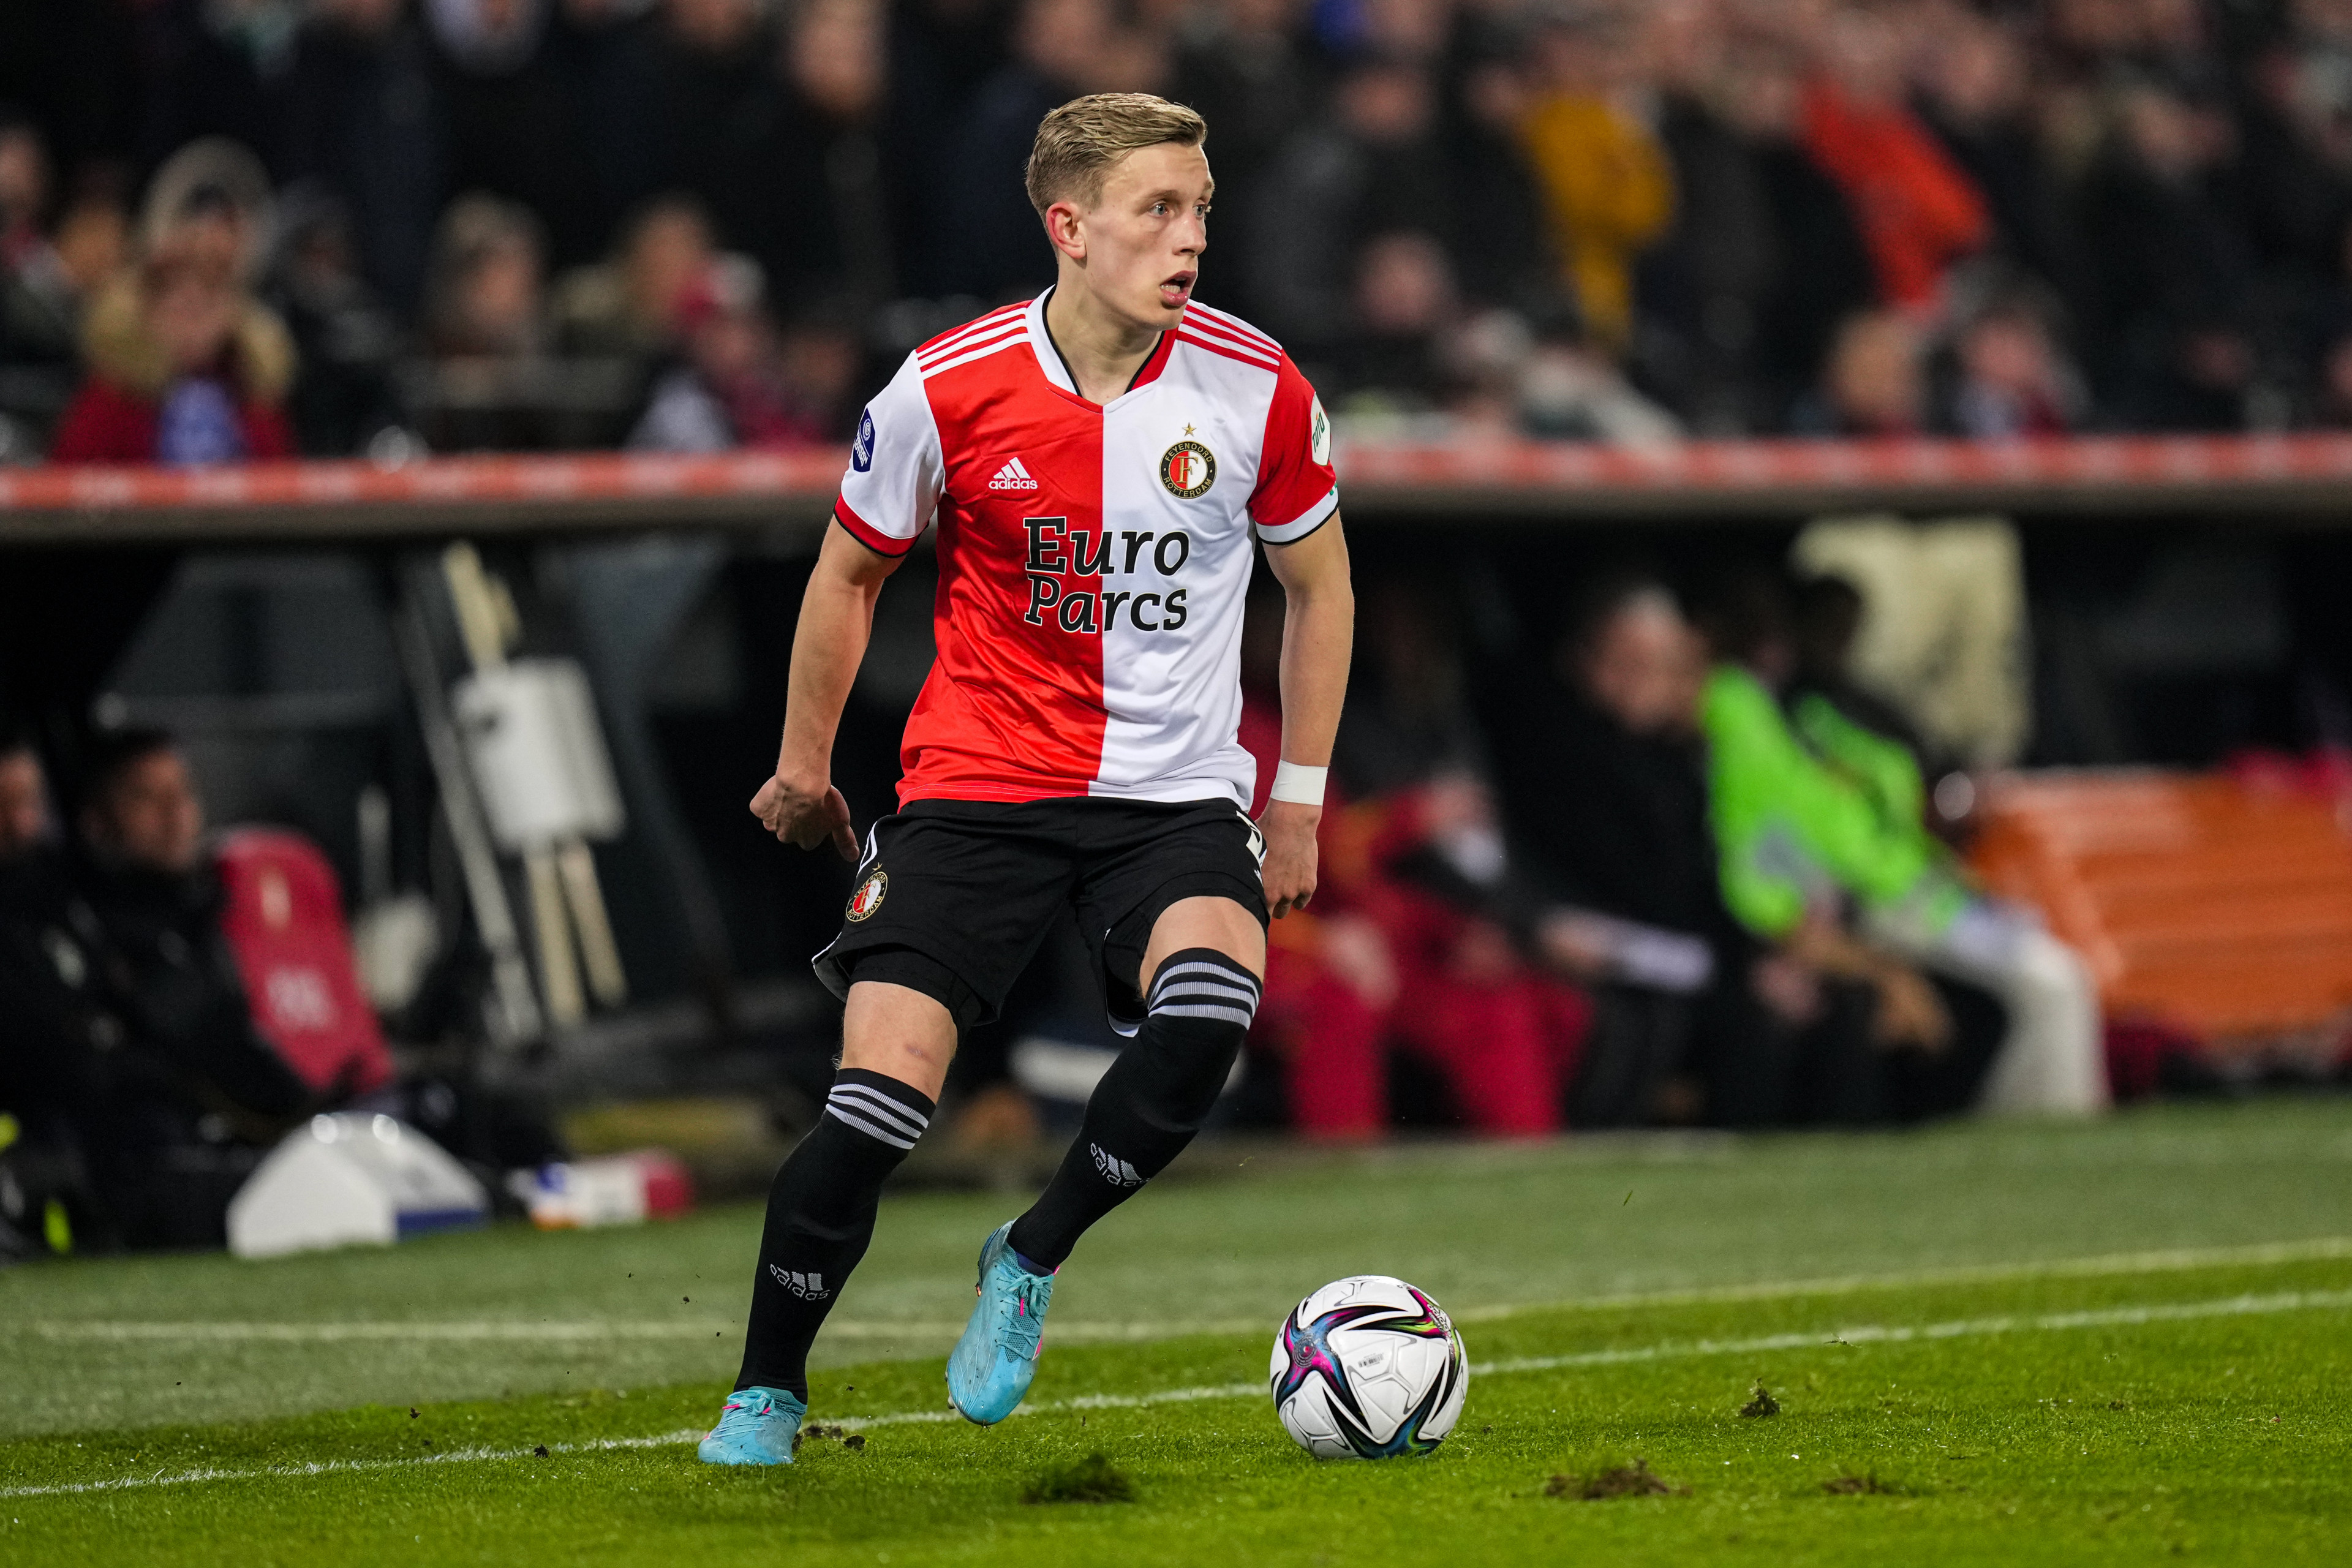 Marcus Pedersen in Noorse selectie; ook twee oud-Feyenoorders geselecteerd